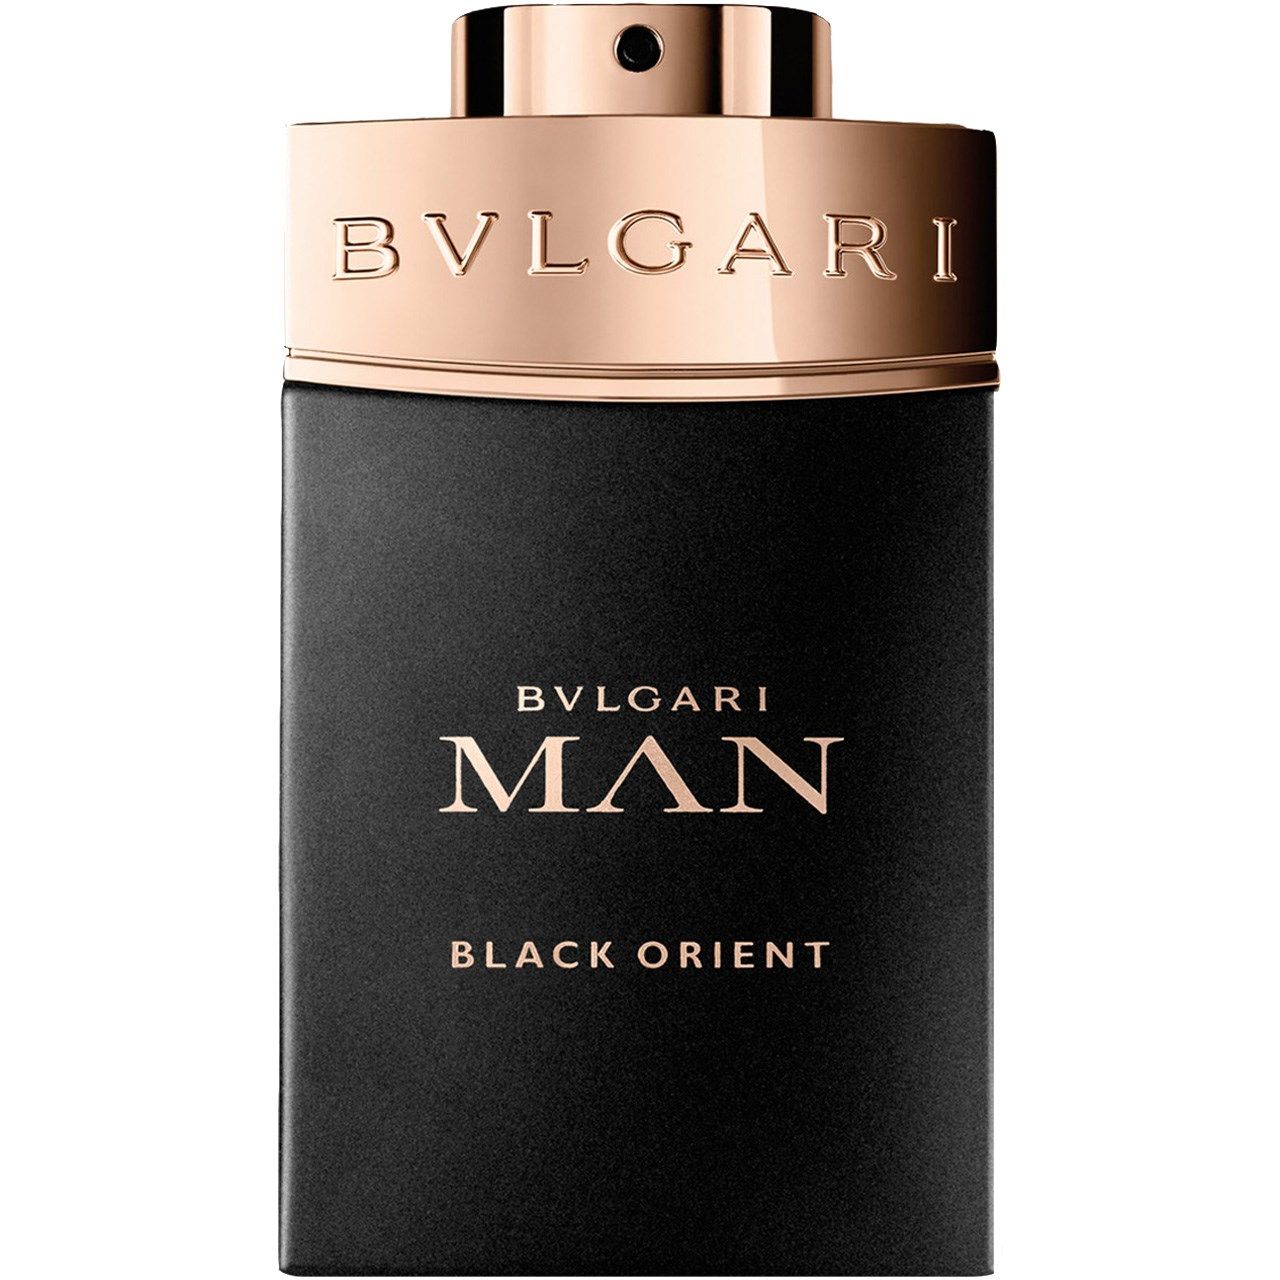 پرفیوم مردانه بولگاری مدل Bvlgari Man Black Orient حجم 100 میلی لیتر  -  - 1